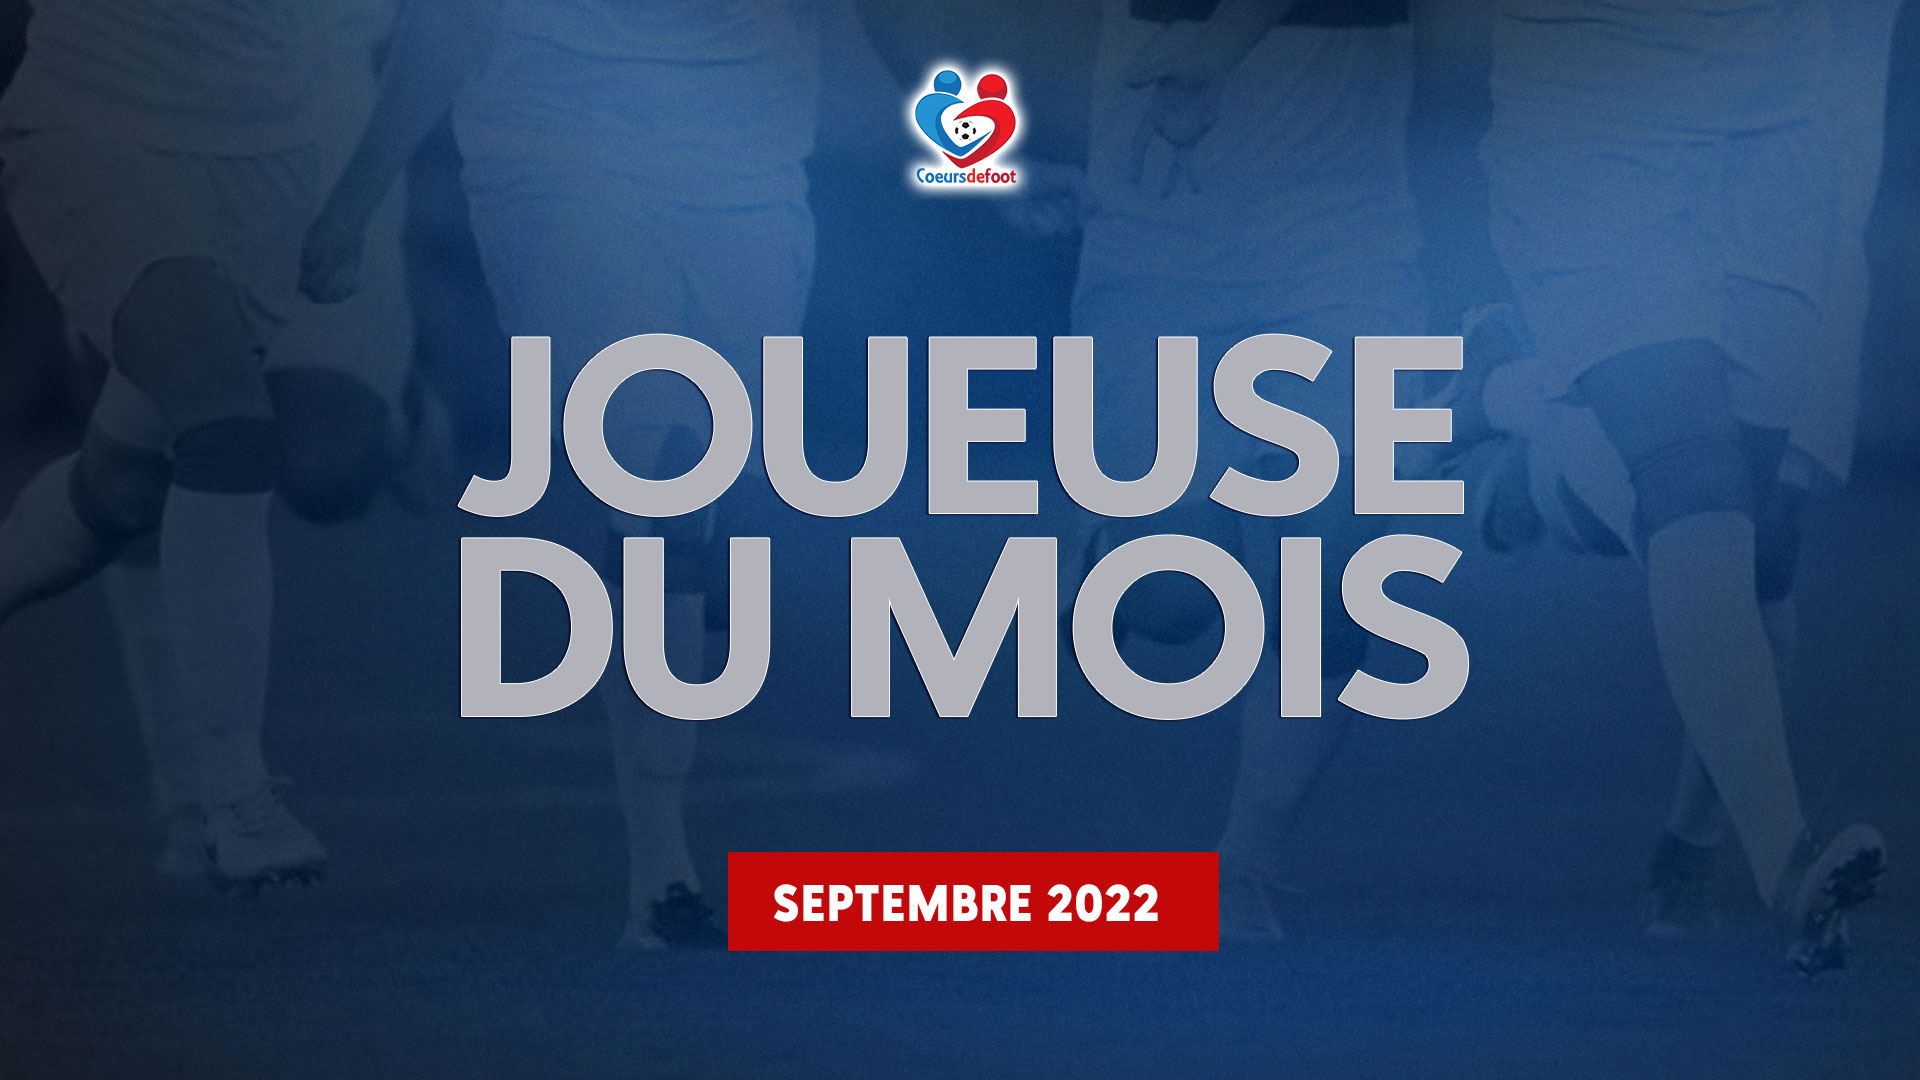 D1 - Découvrez la joueuse Cœurs de Foot du mois de septembre 2022 !